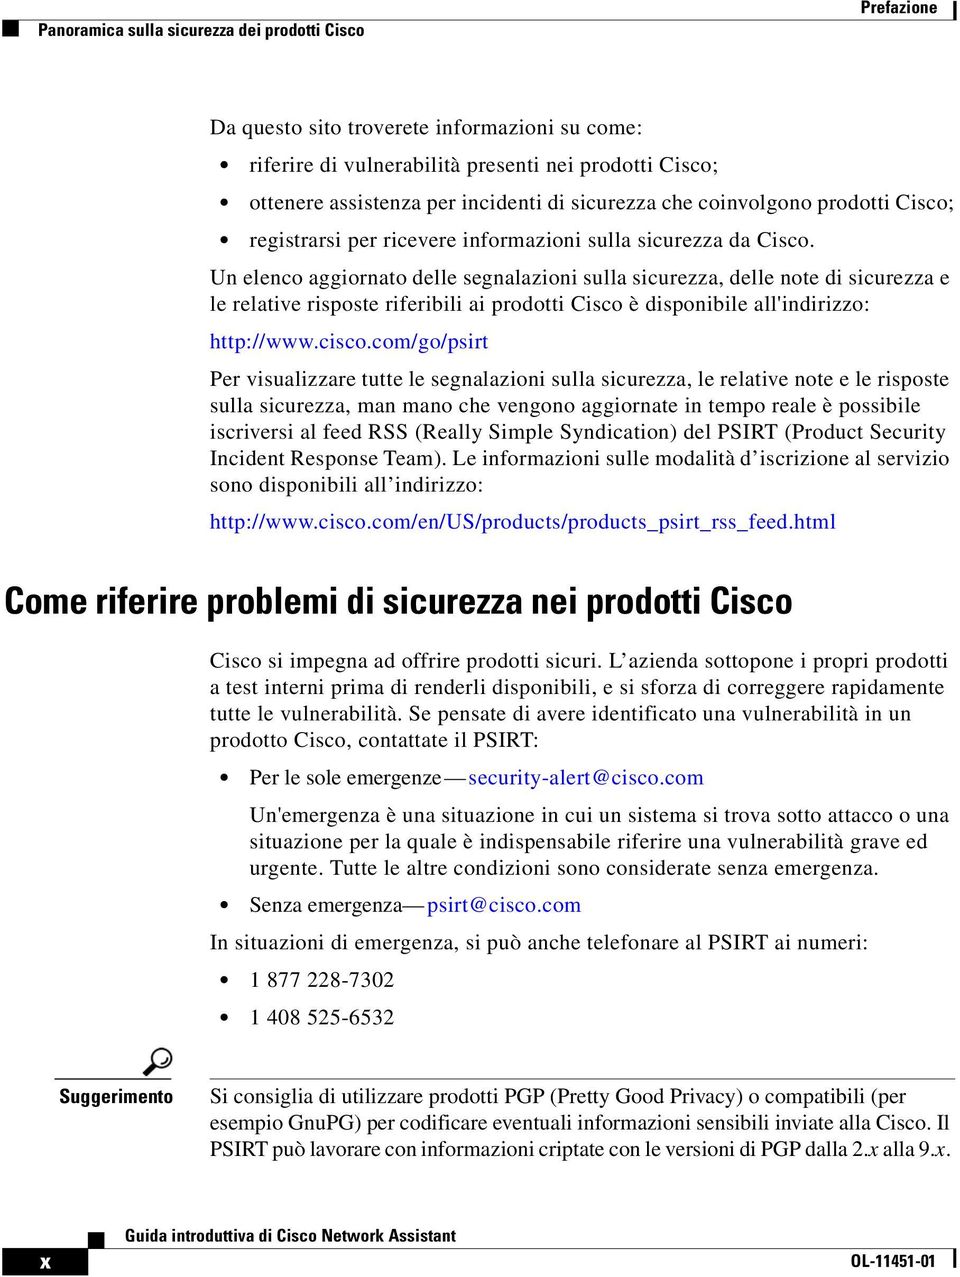 Un elenco aggiornato delle segnalazioni sulla sicurezza, delle note di sicurezza e le relative risposte riferibili ai prodotti Cisco è disponibile all'indirizzo: http://www.cisco.